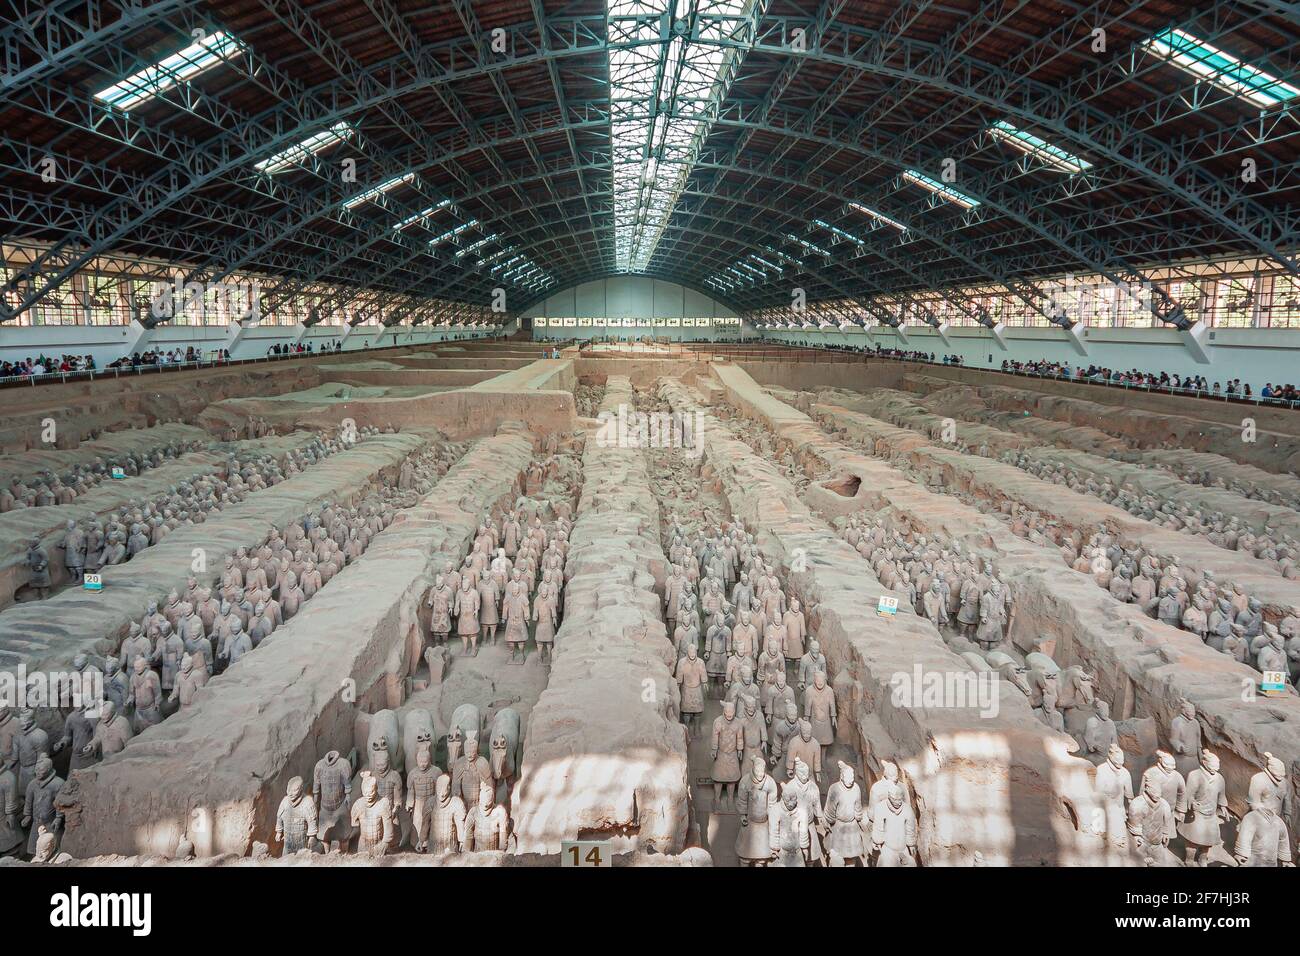 Xian, China - 1. Mai 2010: Terrakotta-Armee von Qin Shi Huang. Riesiges Hallendach über beigefarbenen Schottergrabungen mit Hunderten von Soldaten- und Pferdestatuen. Stockfoto